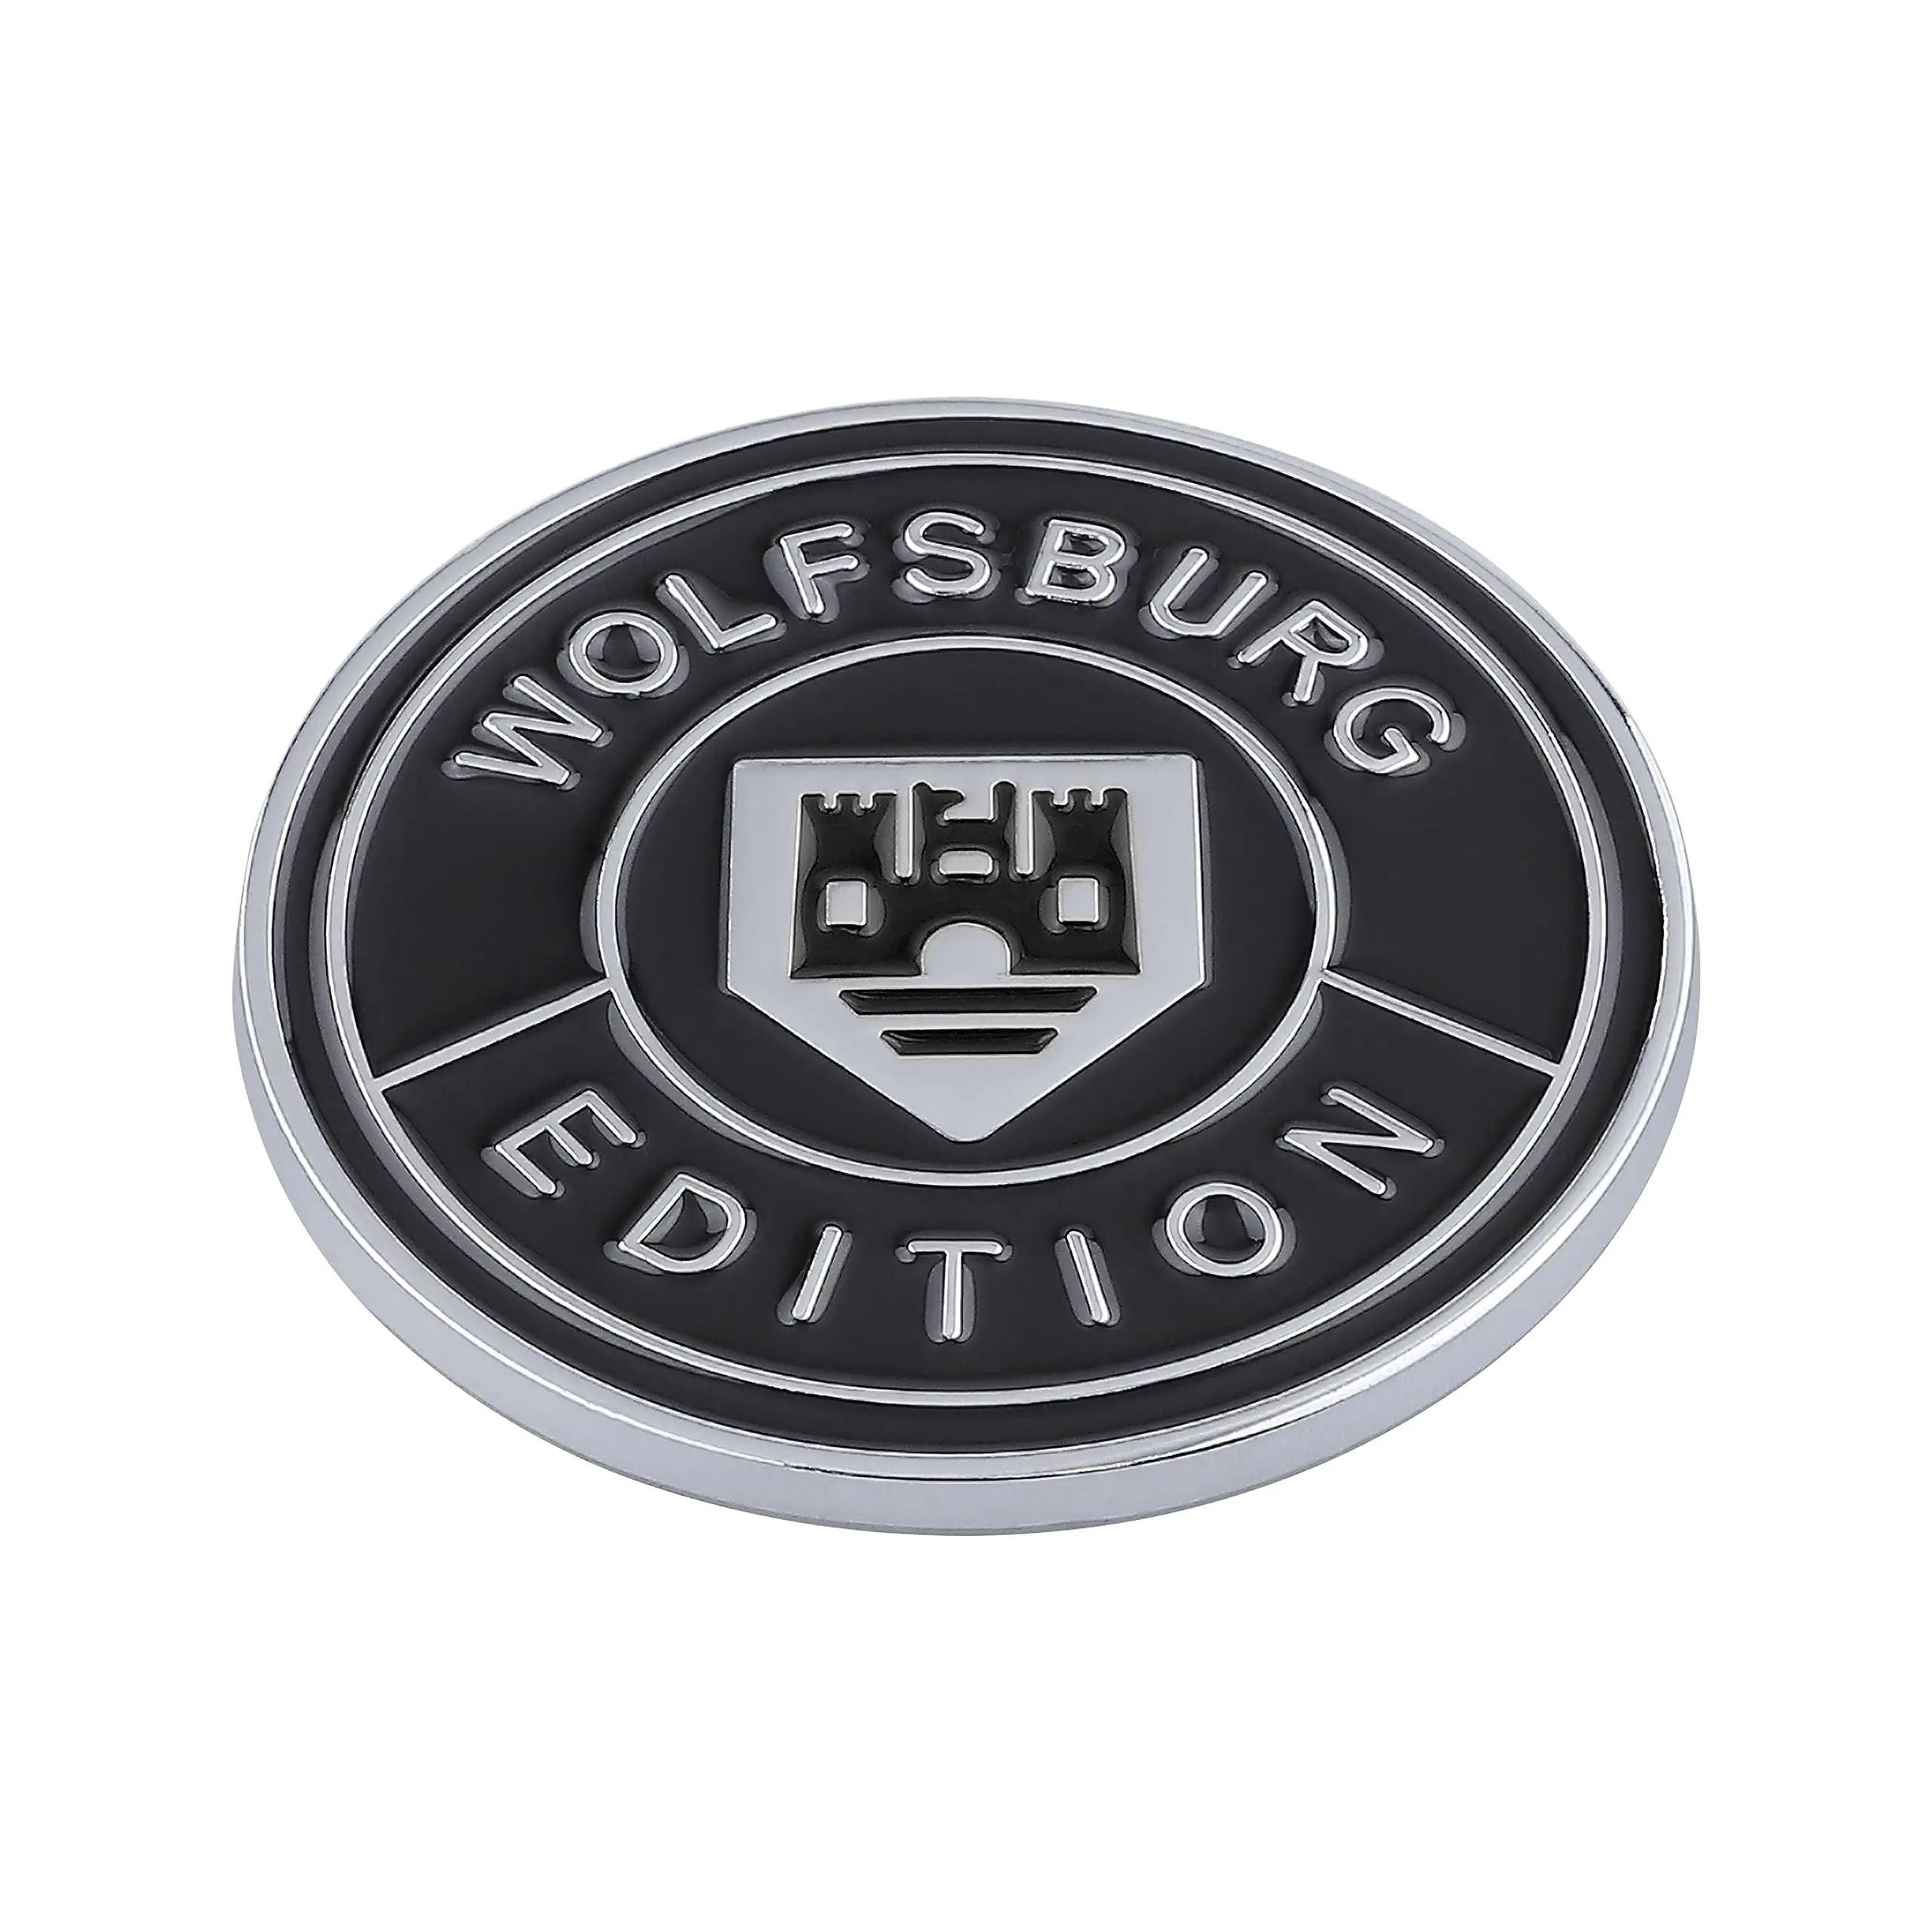 Emblema de carro galvanizado cromado de plástico ABS personalizado de fábrica, emblema de grade de carro para decoração de carroceria de carro